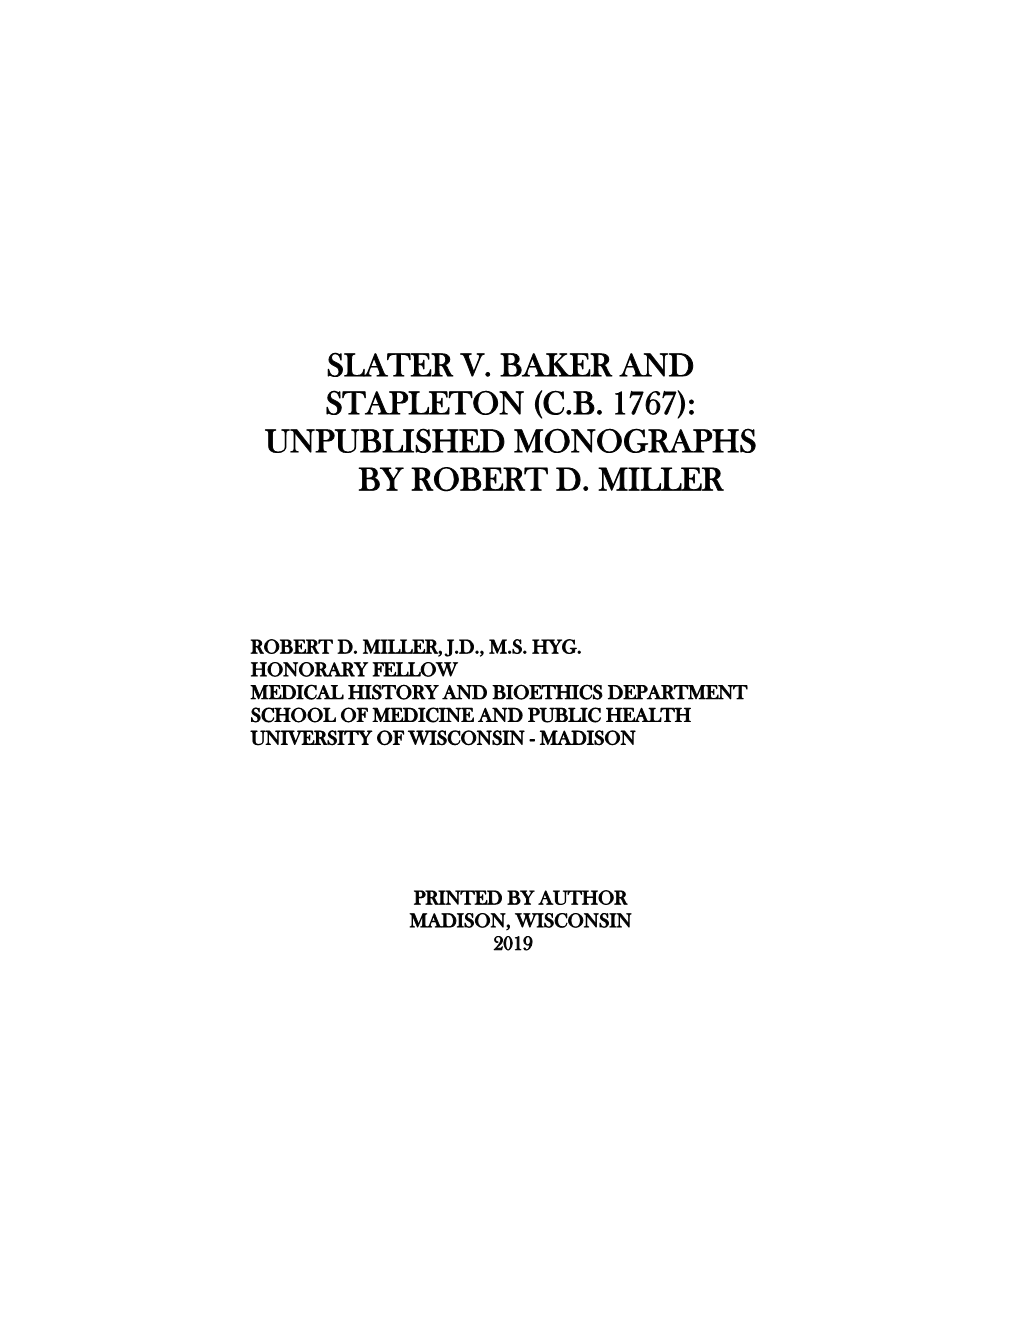 Slater V. Baker and Stapleton (C.B. 1767): Unpublished Monographs by Robert D. Miller